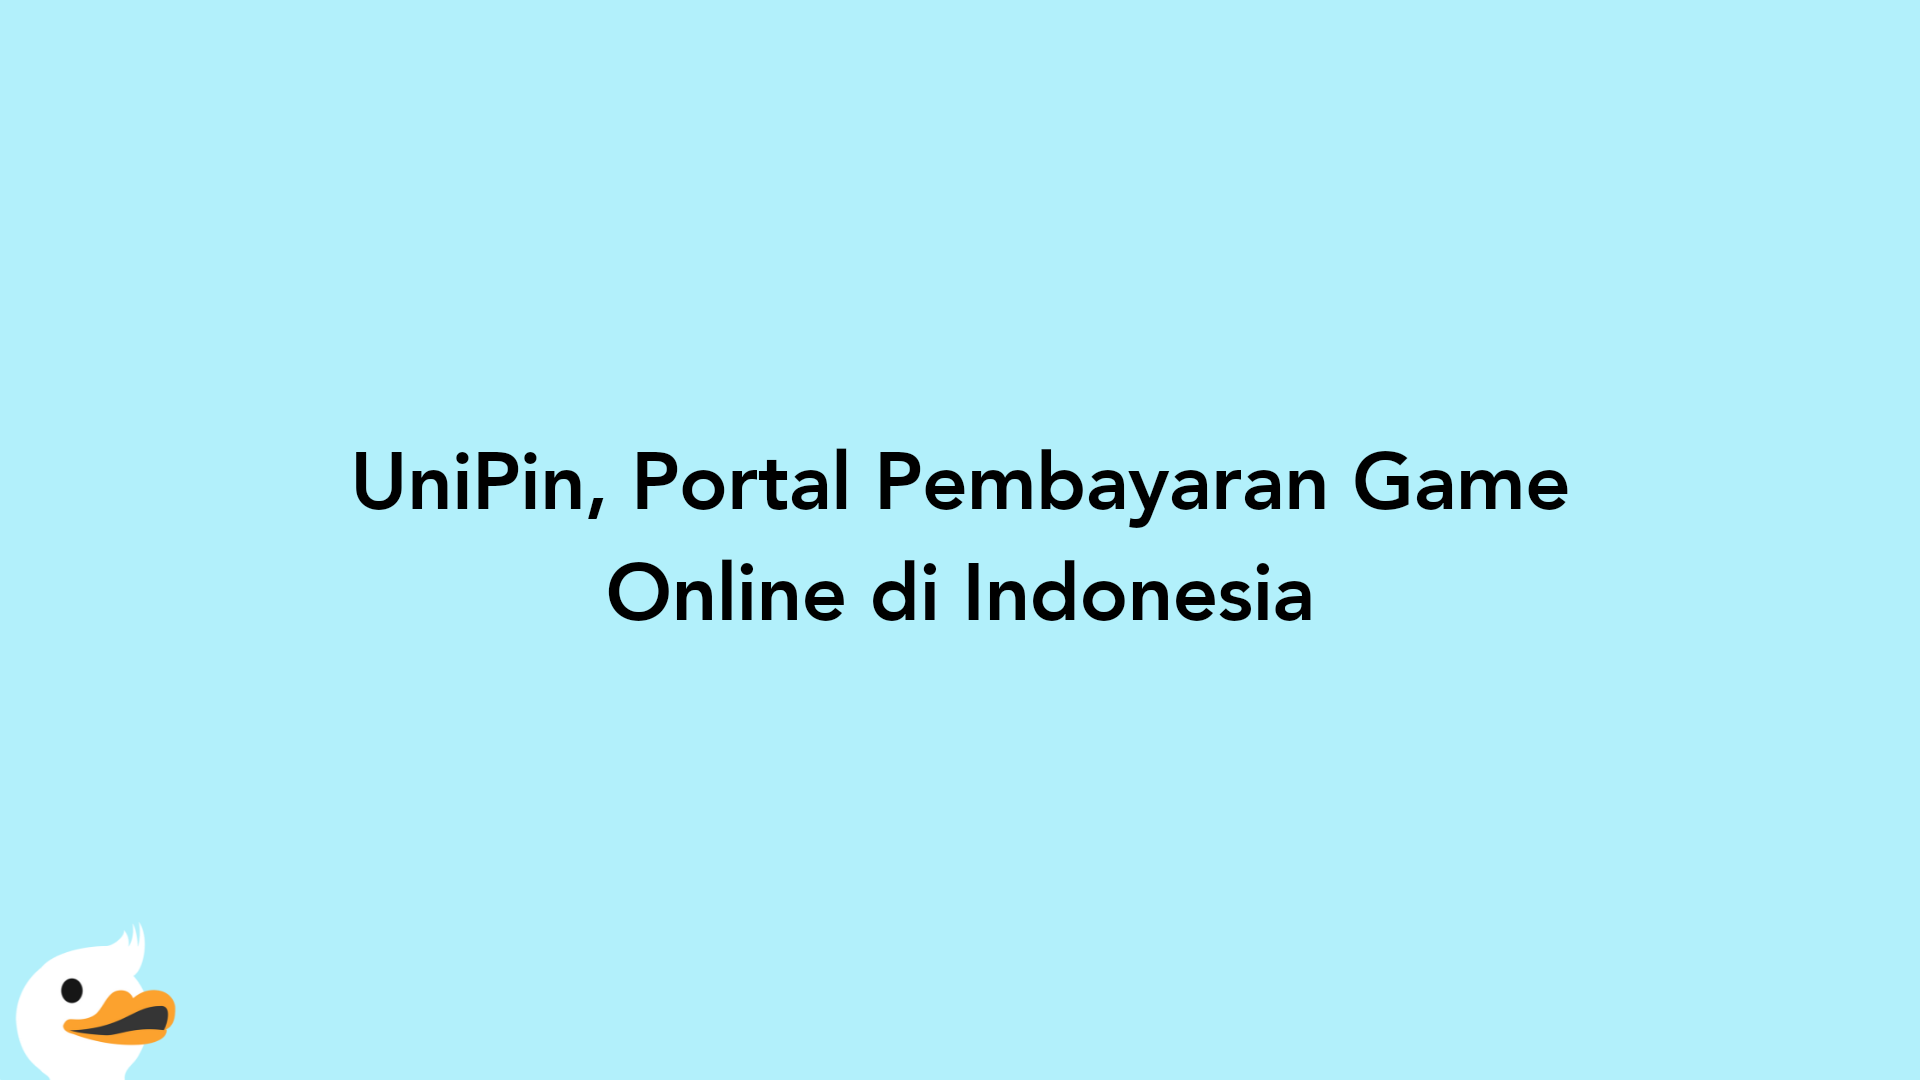 UniPin, Portal Pembayaran Game Online di Indonesia